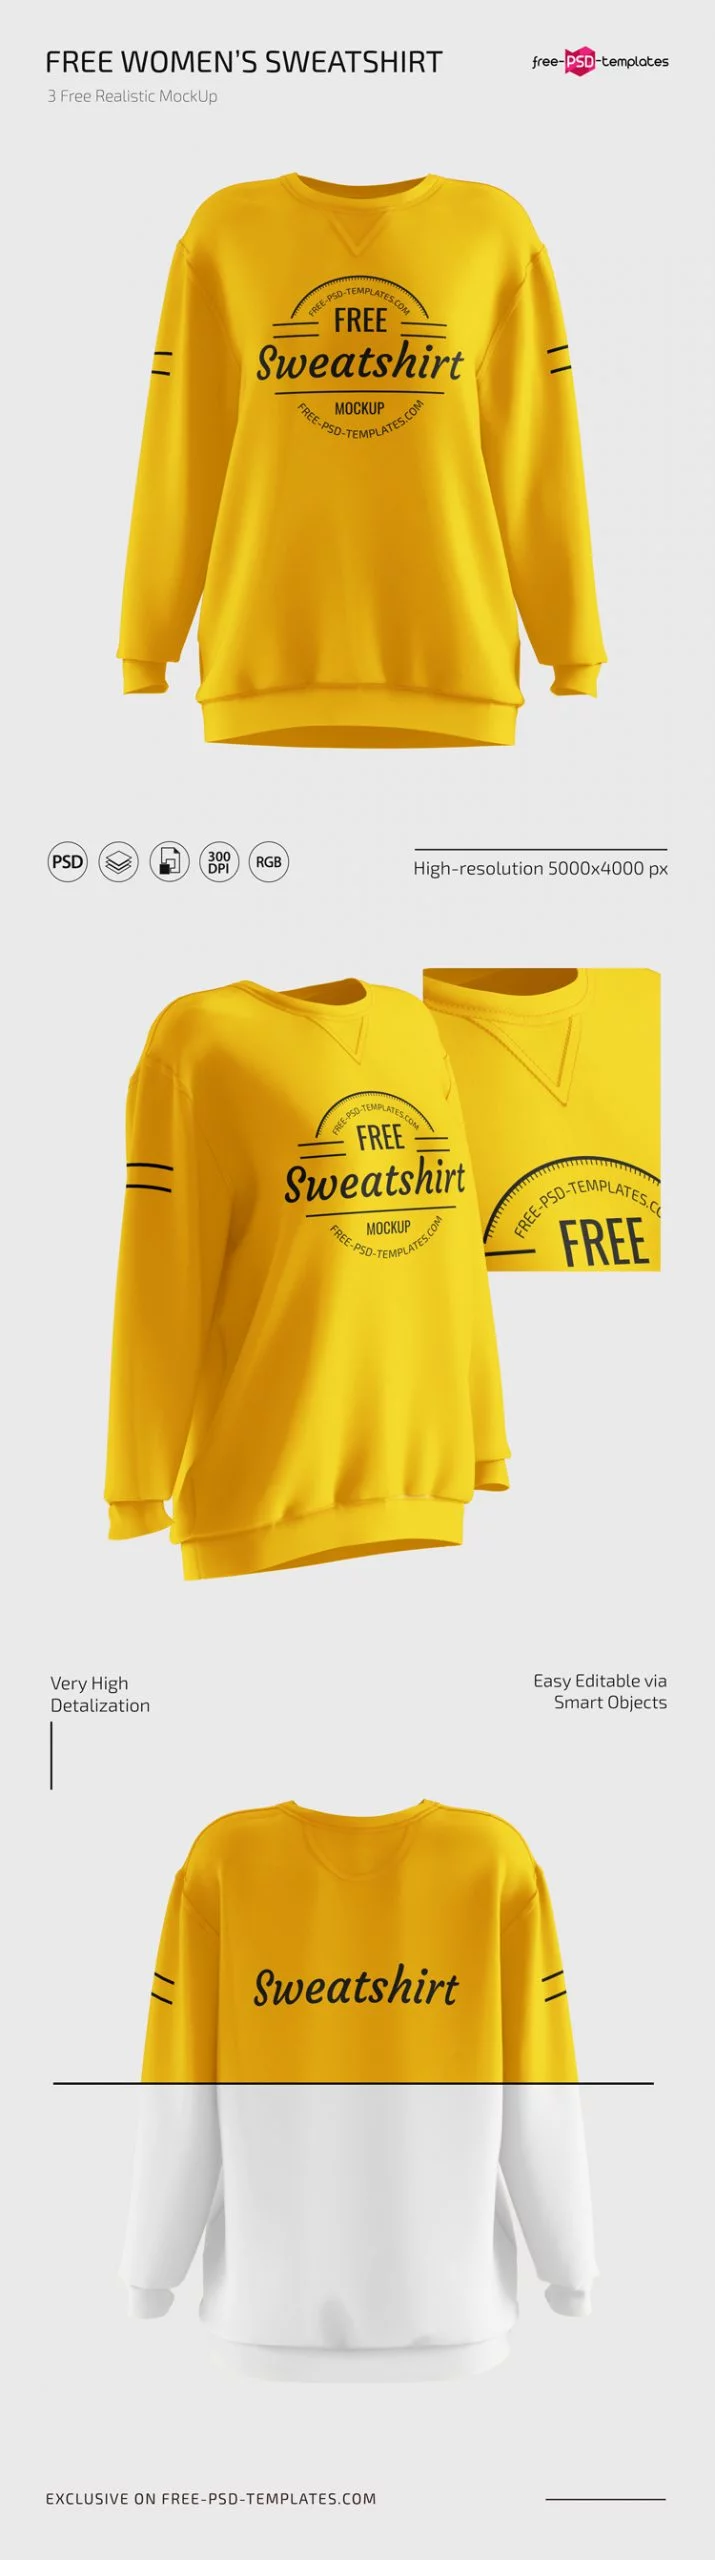 Free Women’s Sweatshirt Mockups in PSD